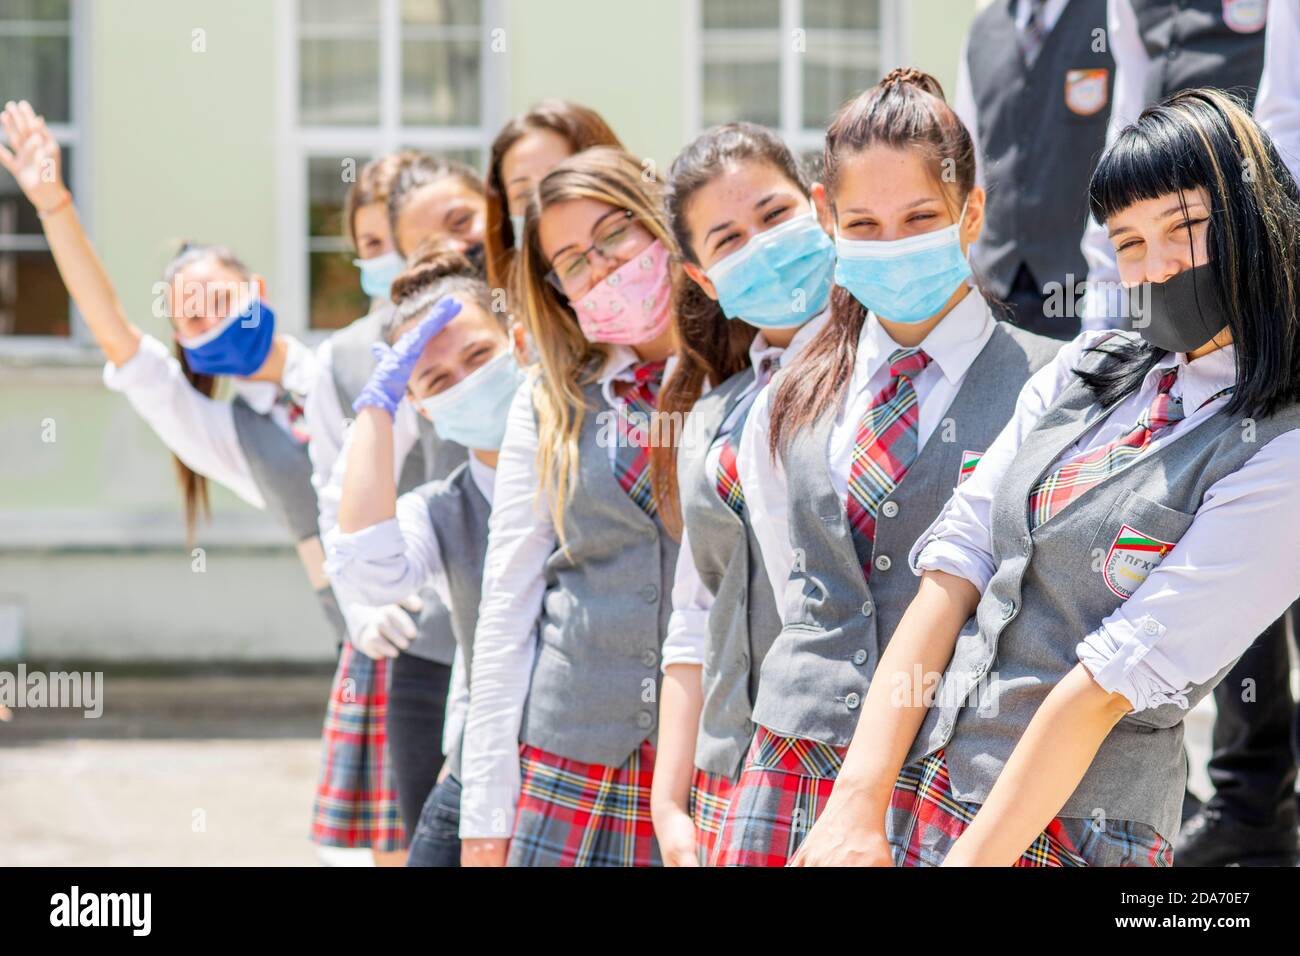 Sliven, Bulgarie - 11 juin 2020: Les filles se préparant à l'obtention du diplôme d'études secondaires pendant Covid-19 coronavirus social distanciation, portant le visage couvrant / m Banque D'Images